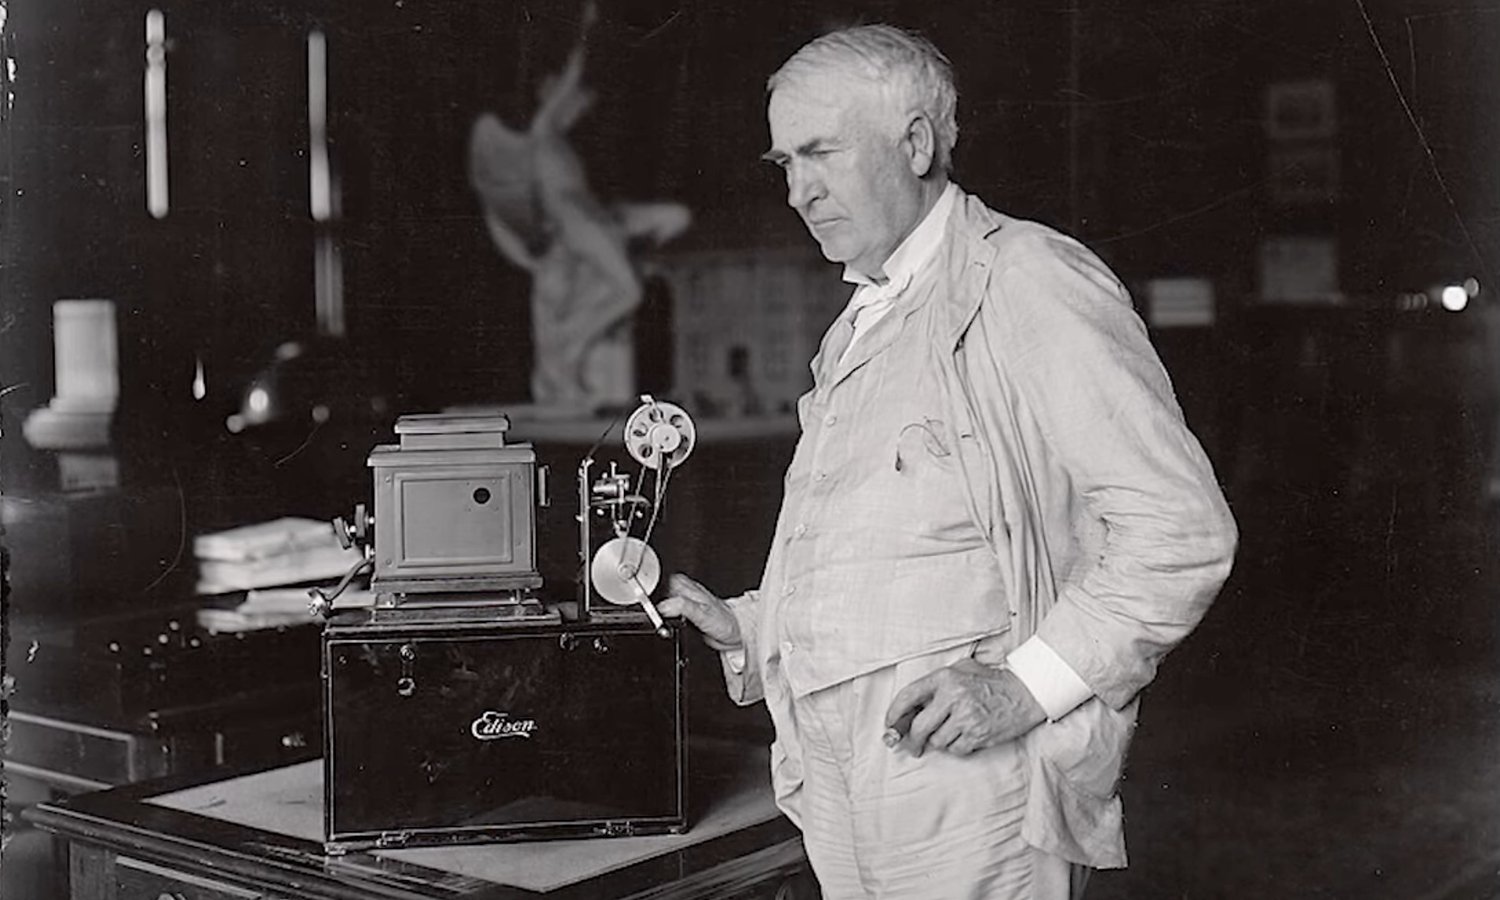 Une vidéo intéressante explore la vérité derrière les inventions de Thomas Edison qu'il n'a pas inventées